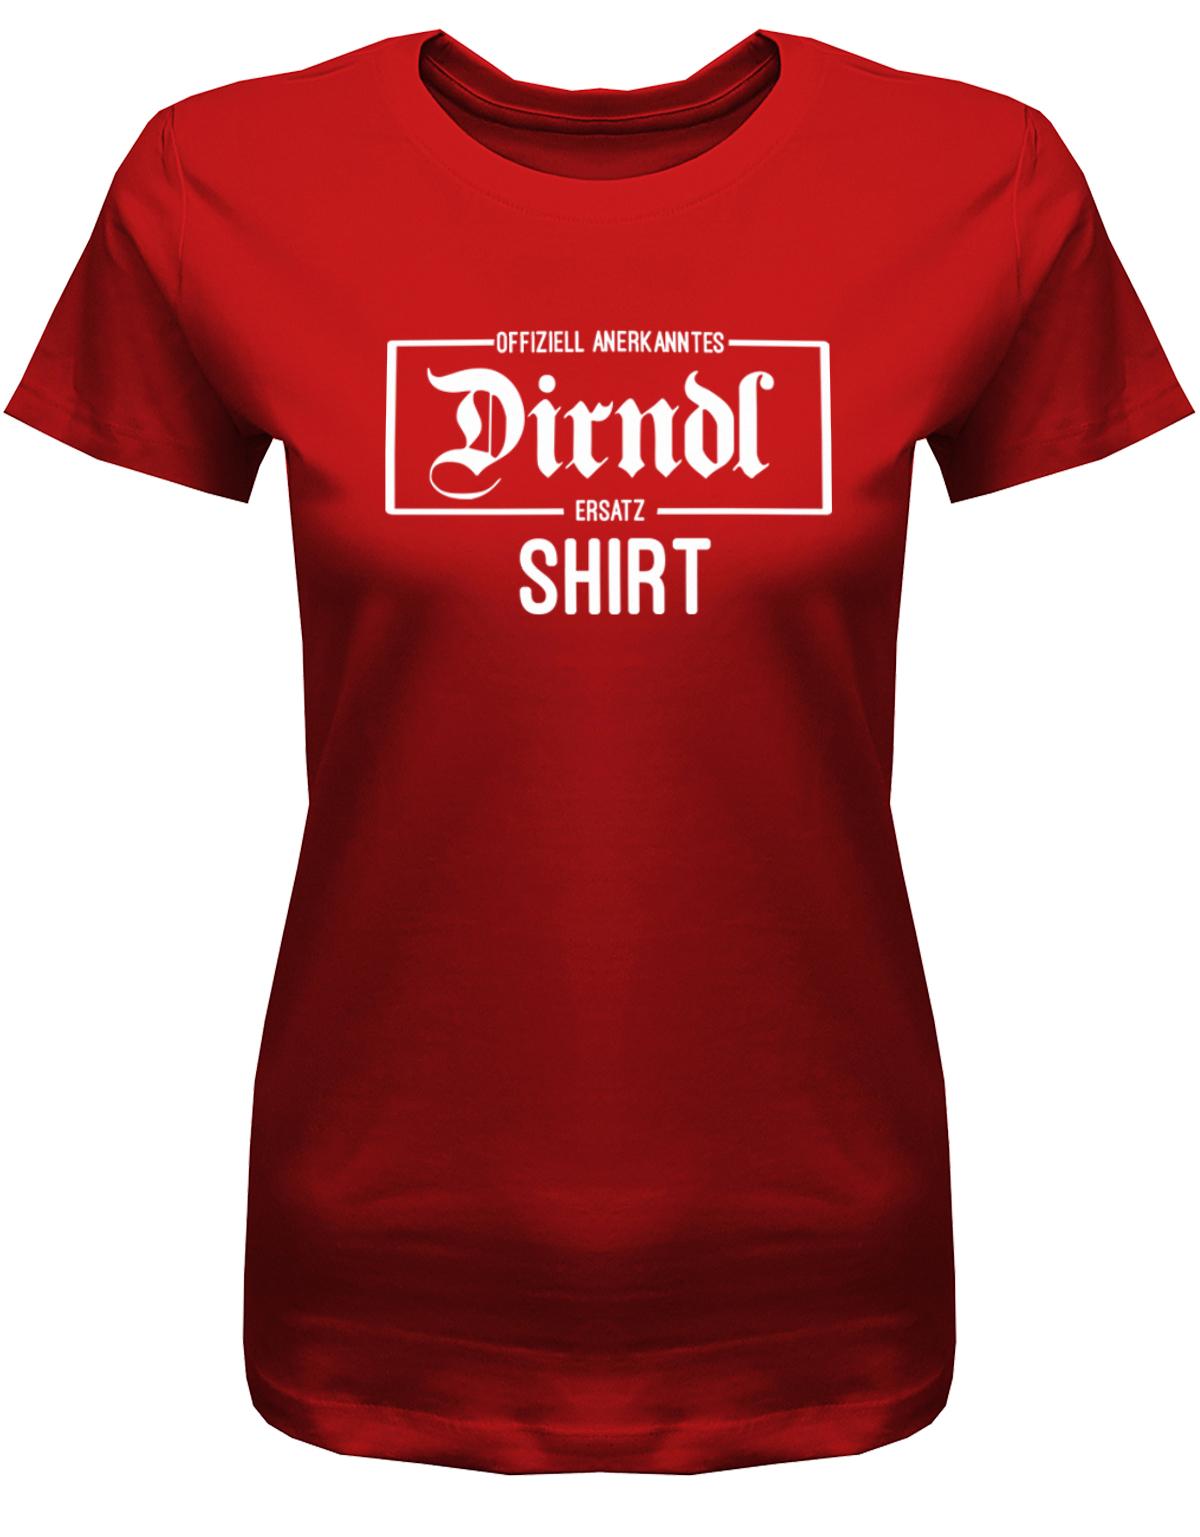 Offiziell-anerkanntes-Dirndl-Ersatz-shirt-Damen-Rot